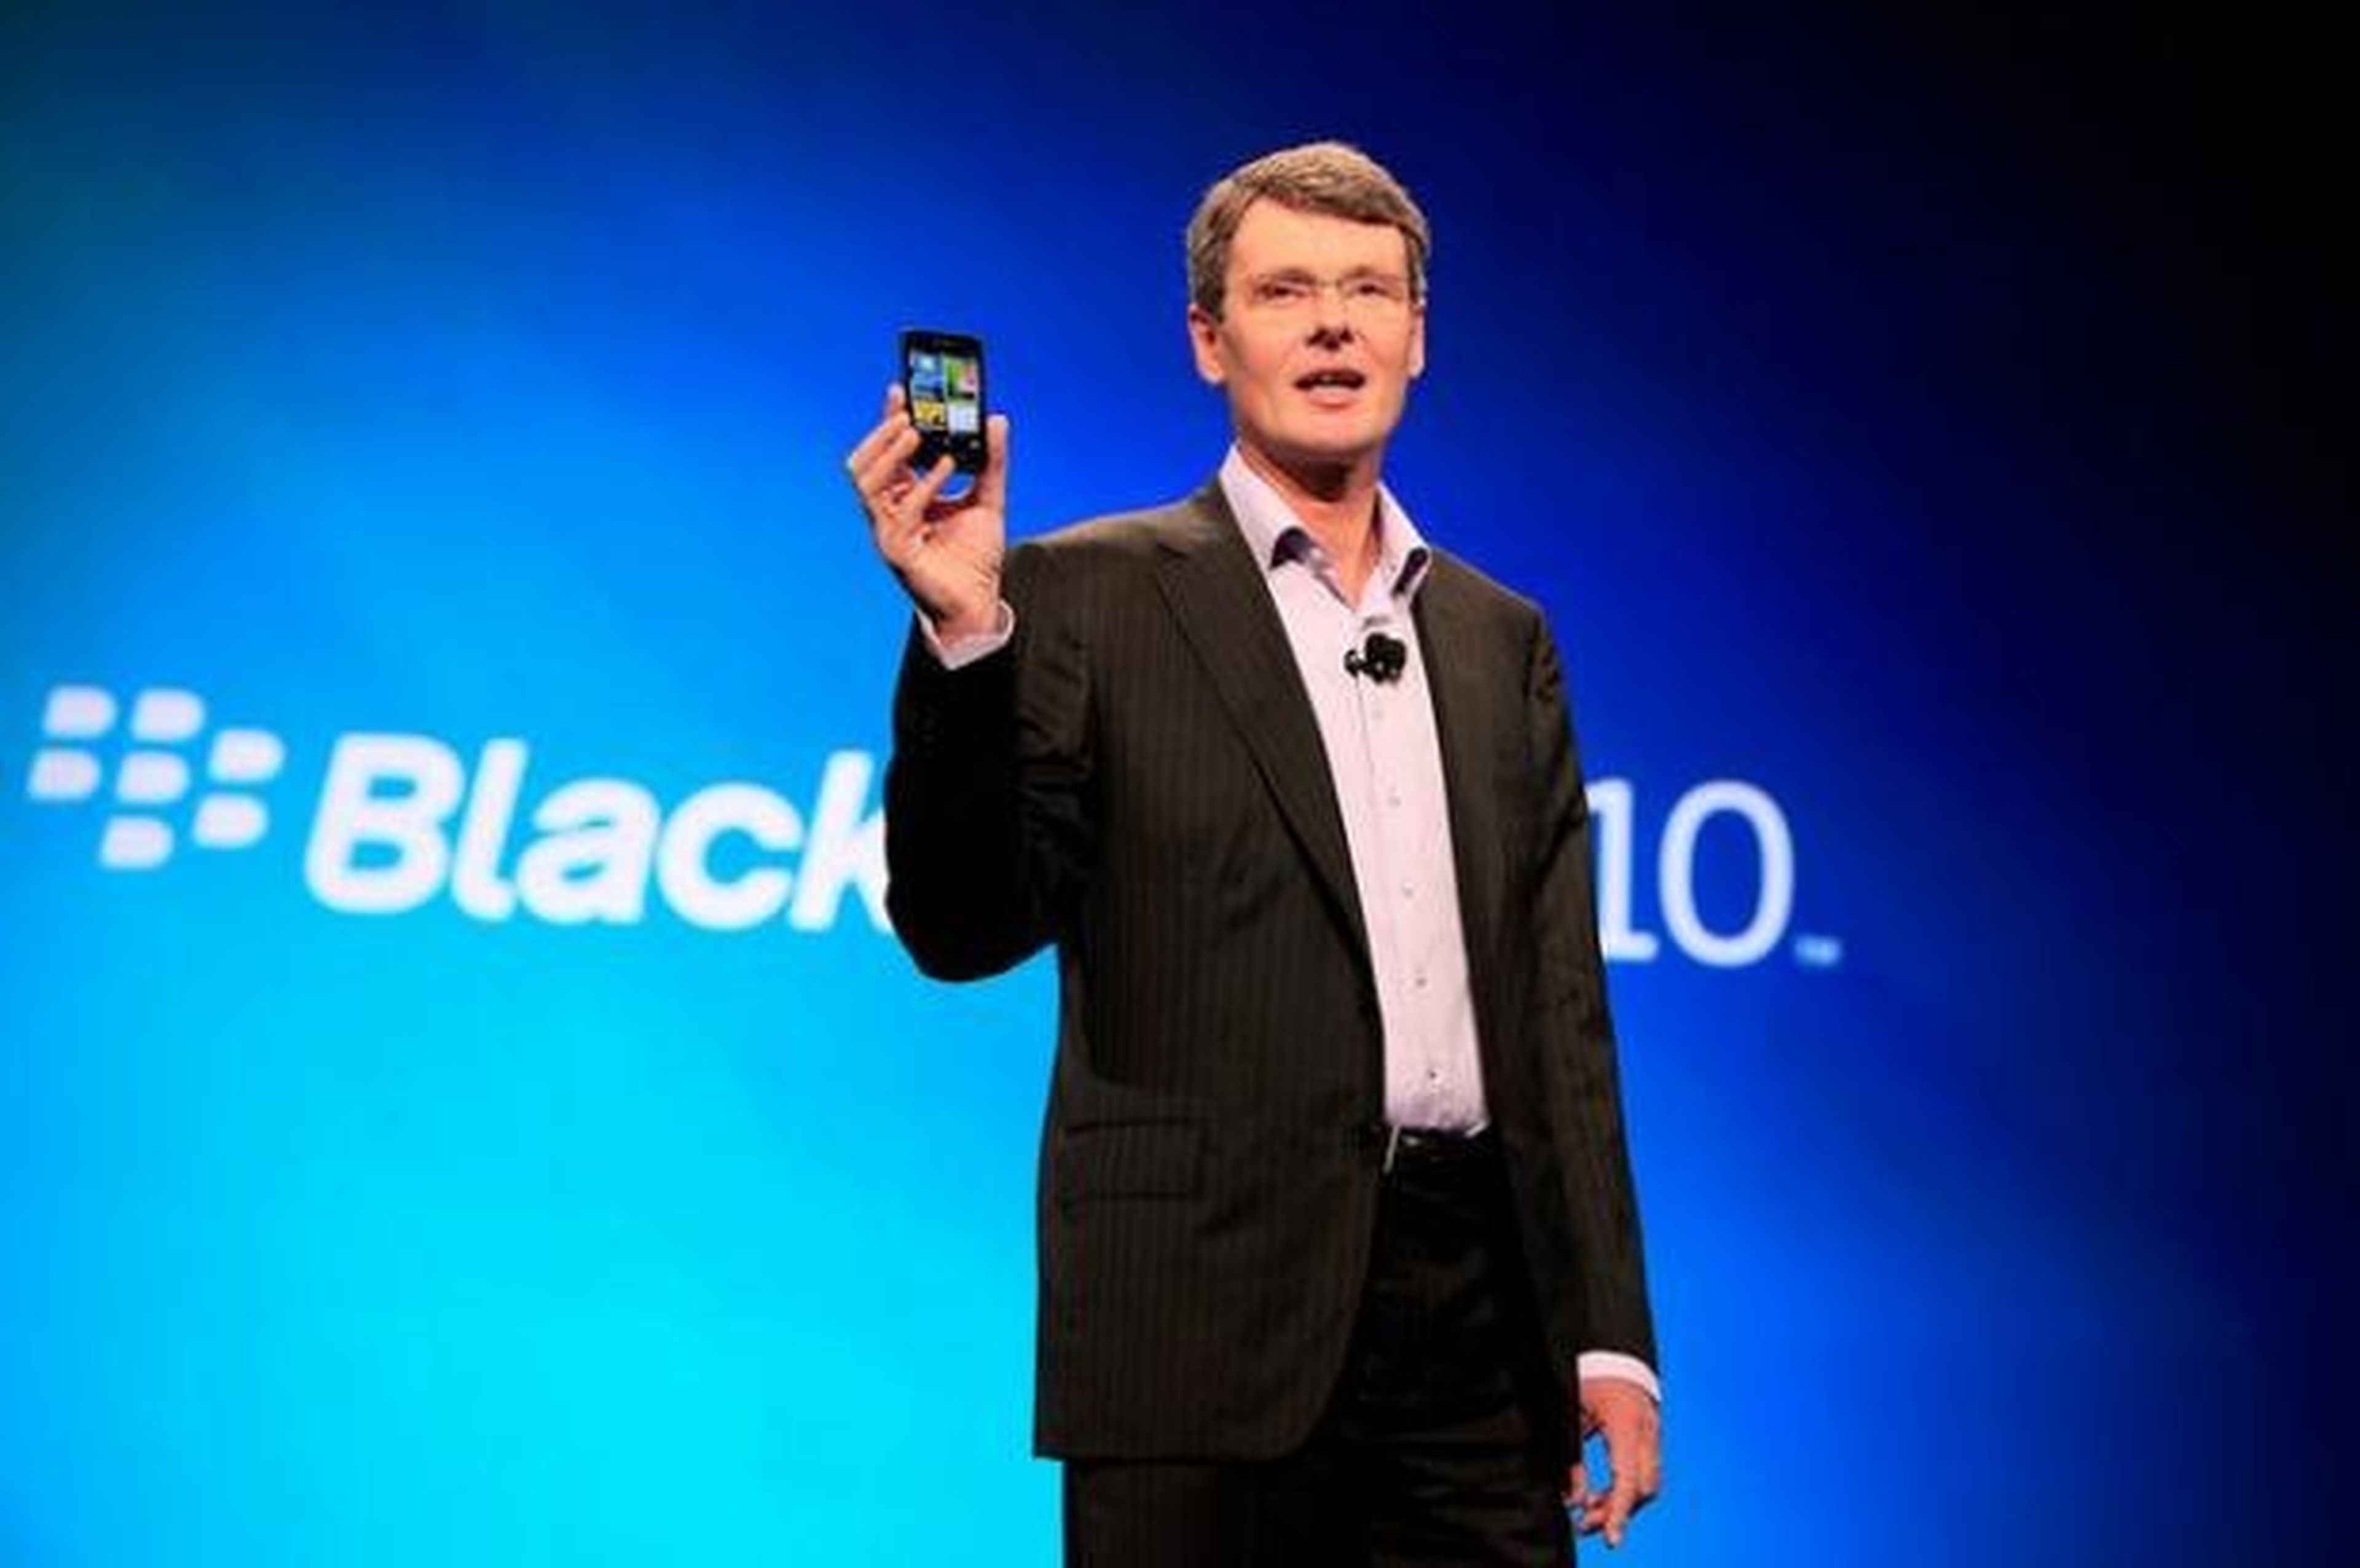 CEO Blackberry Thorsen Heins